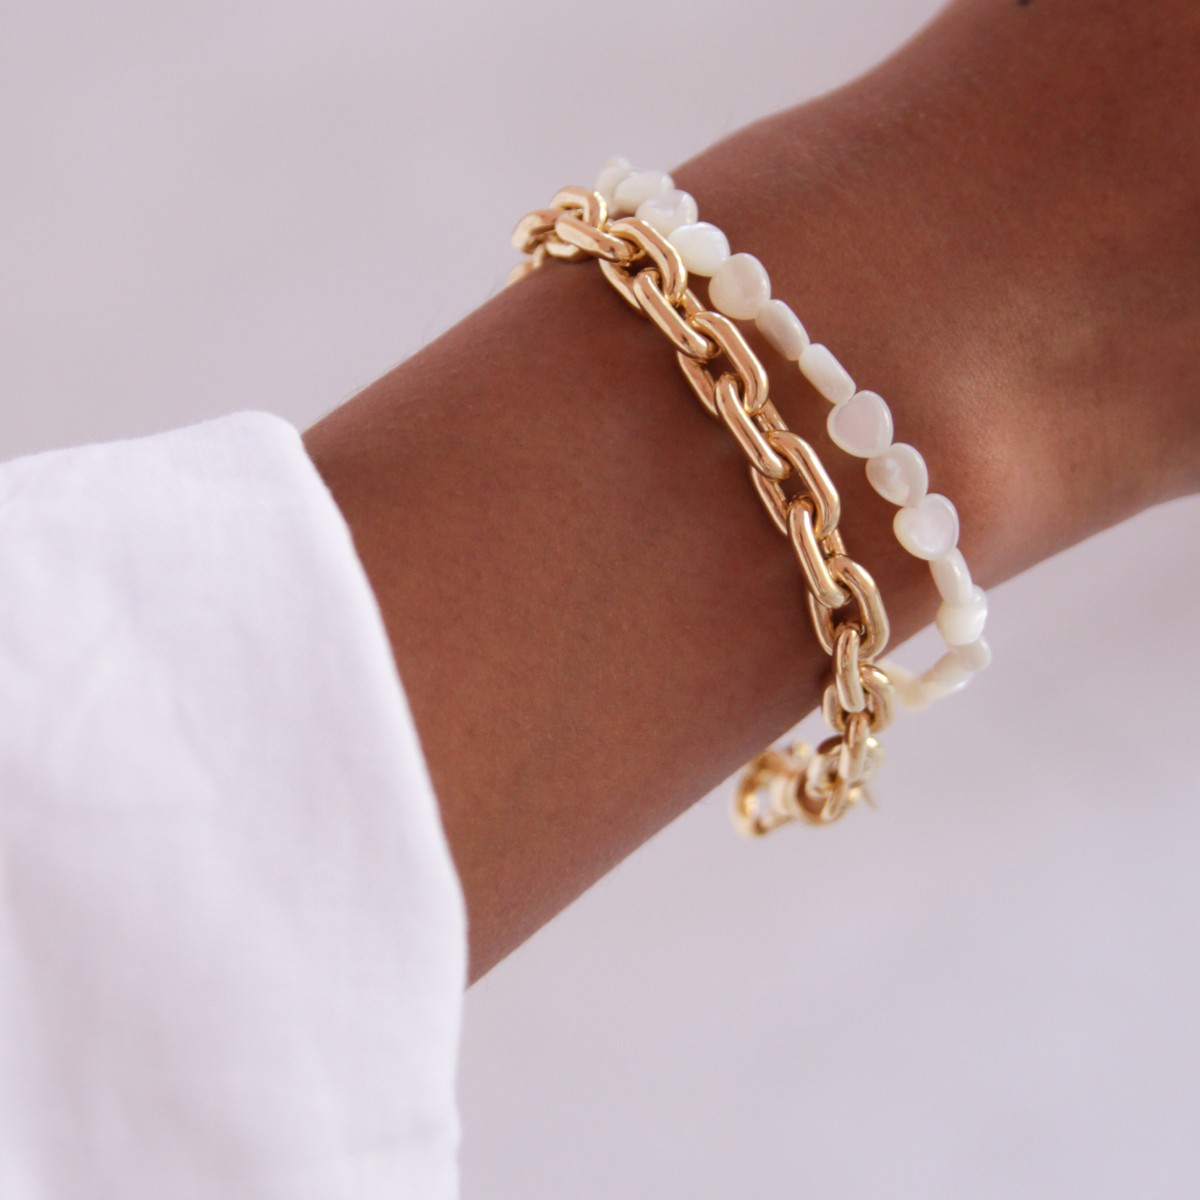 Heart bracelet – Armbänder – 18k vergoldet